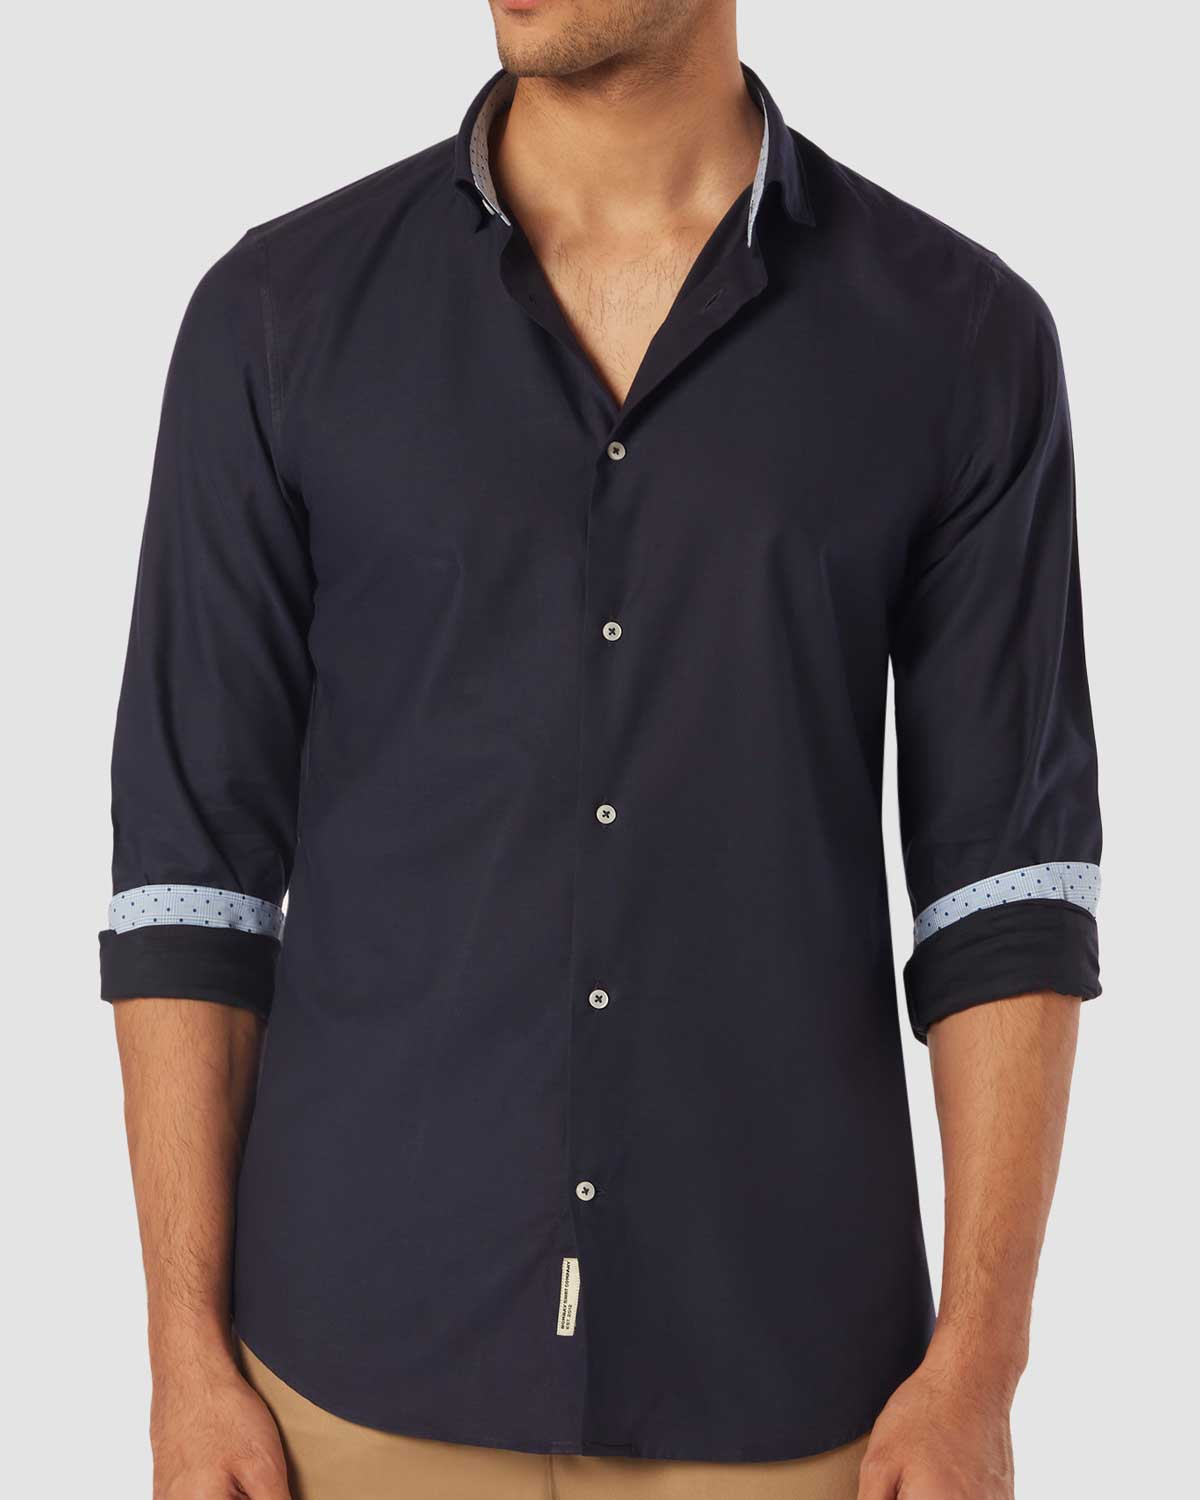 Bombay Shirt Company - Thomas Mason Armada Shirt